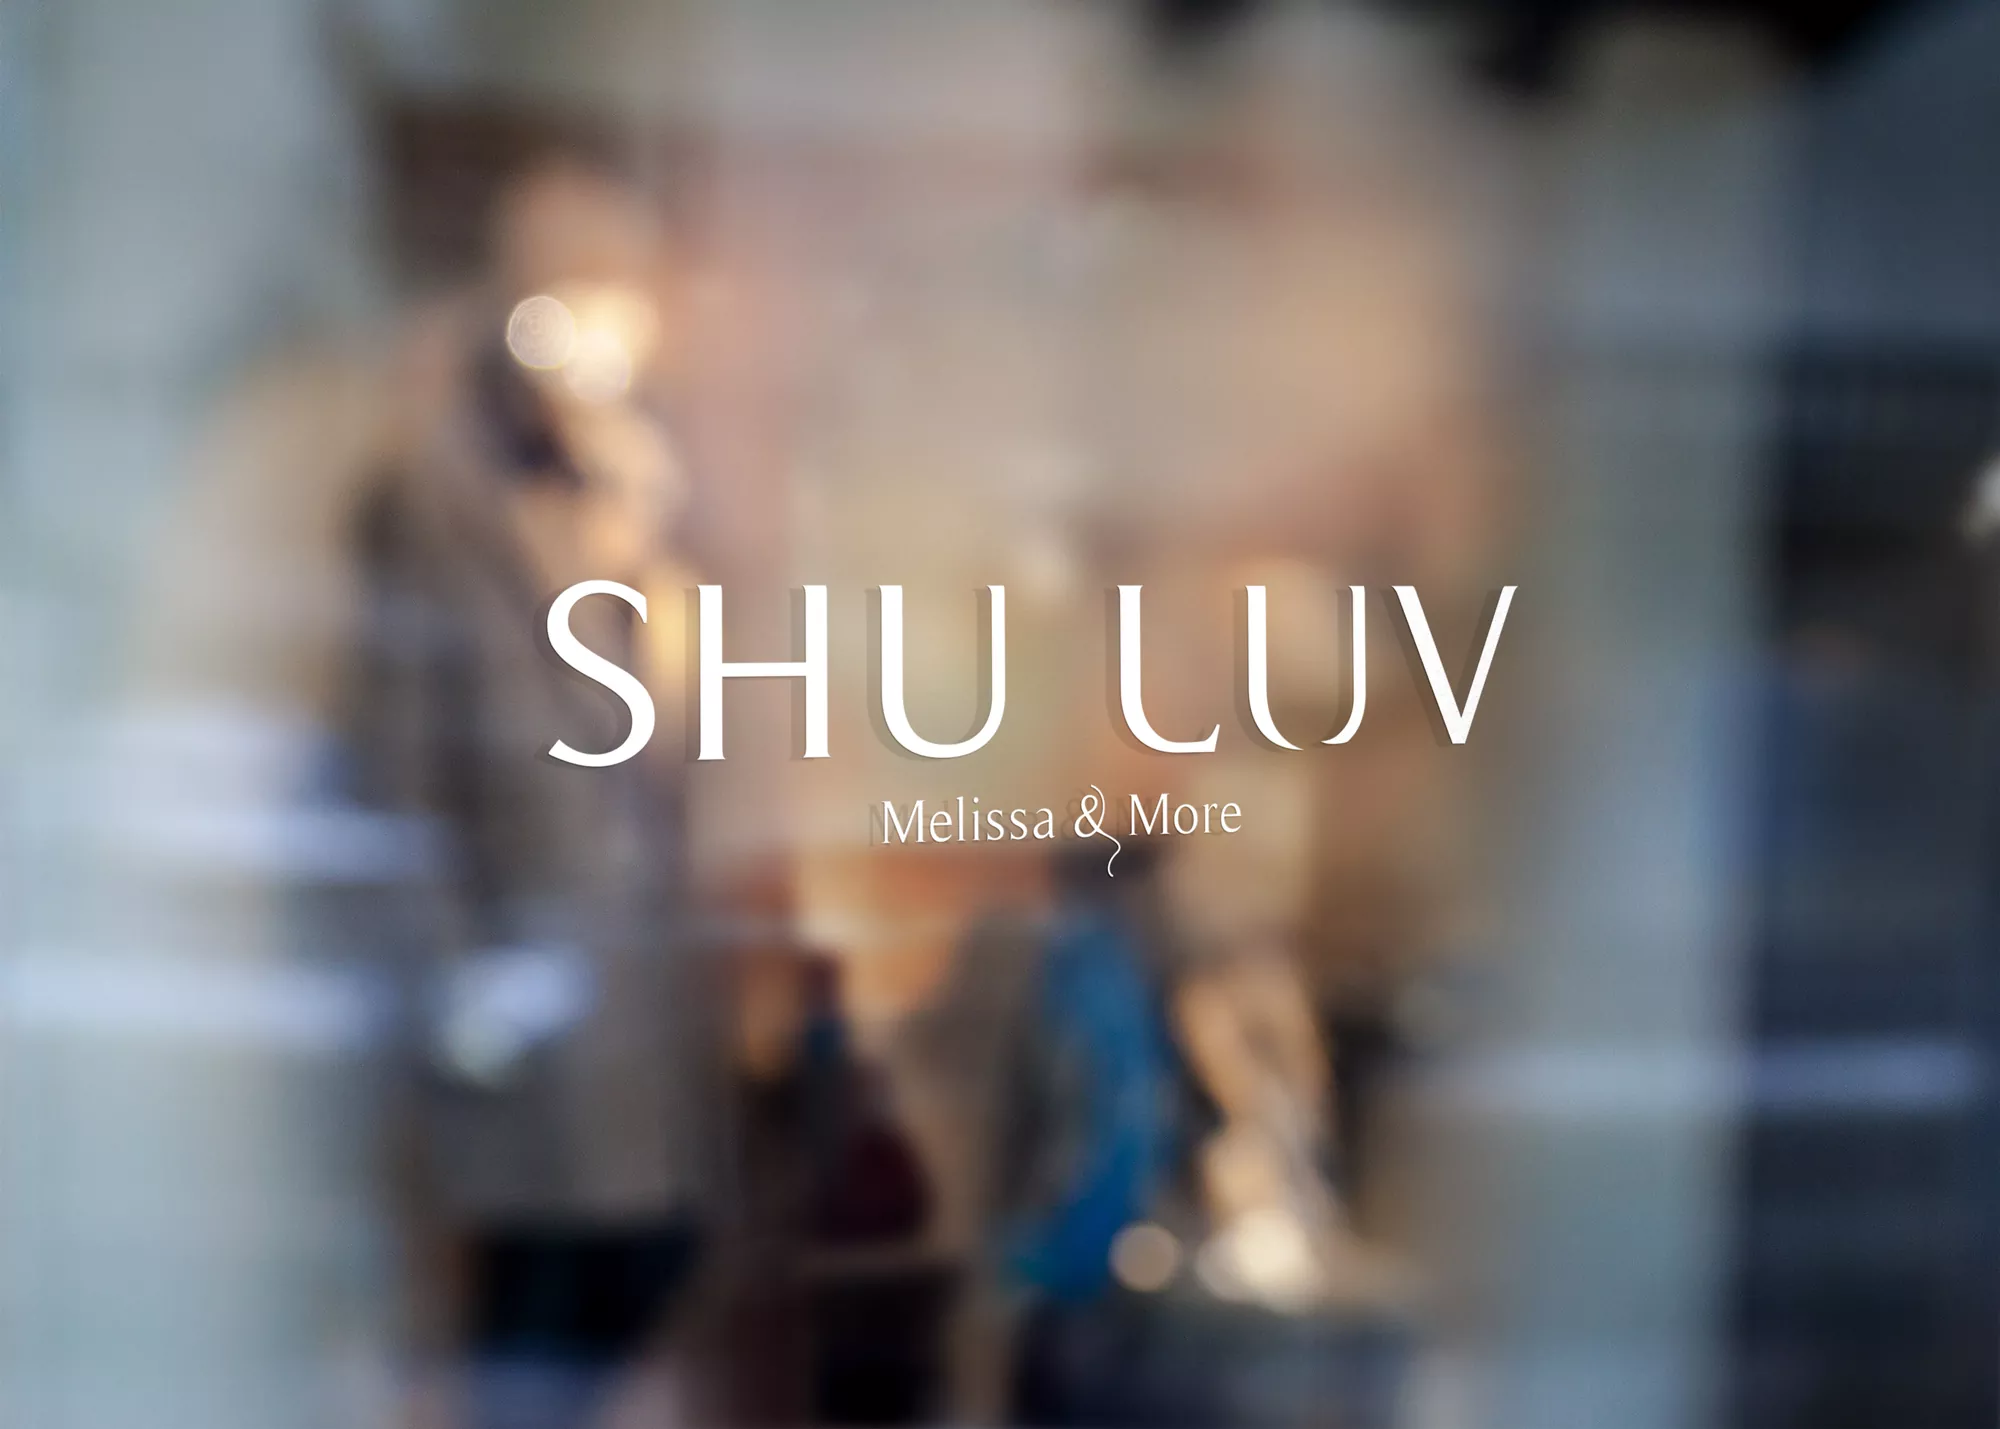 Shuluv: Melissa & More - projekt loga dla marki obuwniczej wizualizacja napisu ploterowego na szybie